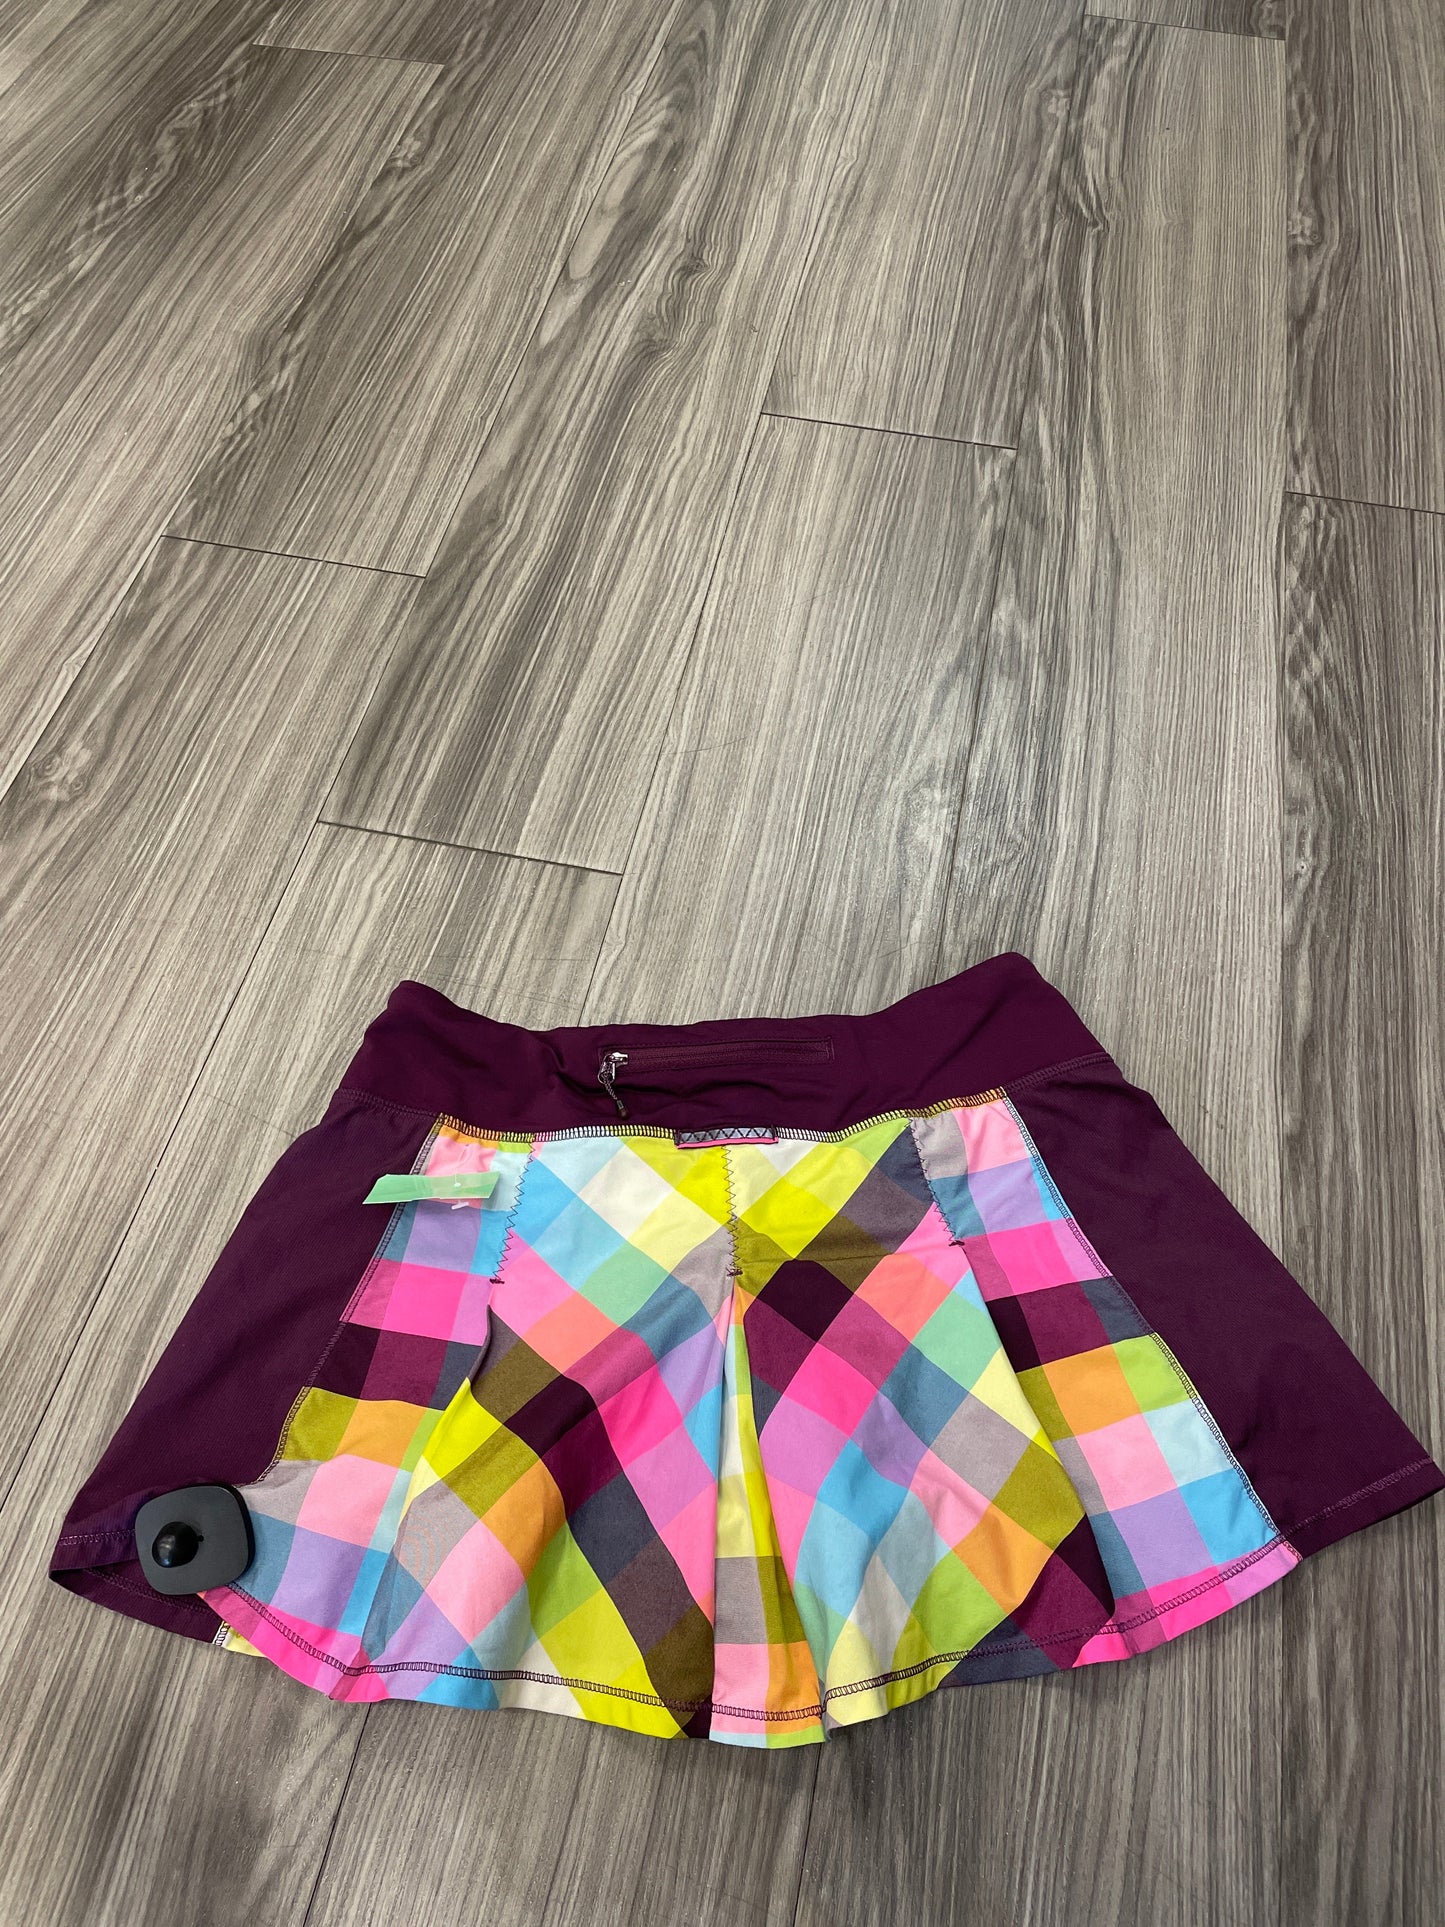 Multi-colored Athletic Shorts Lululemon, Size 4